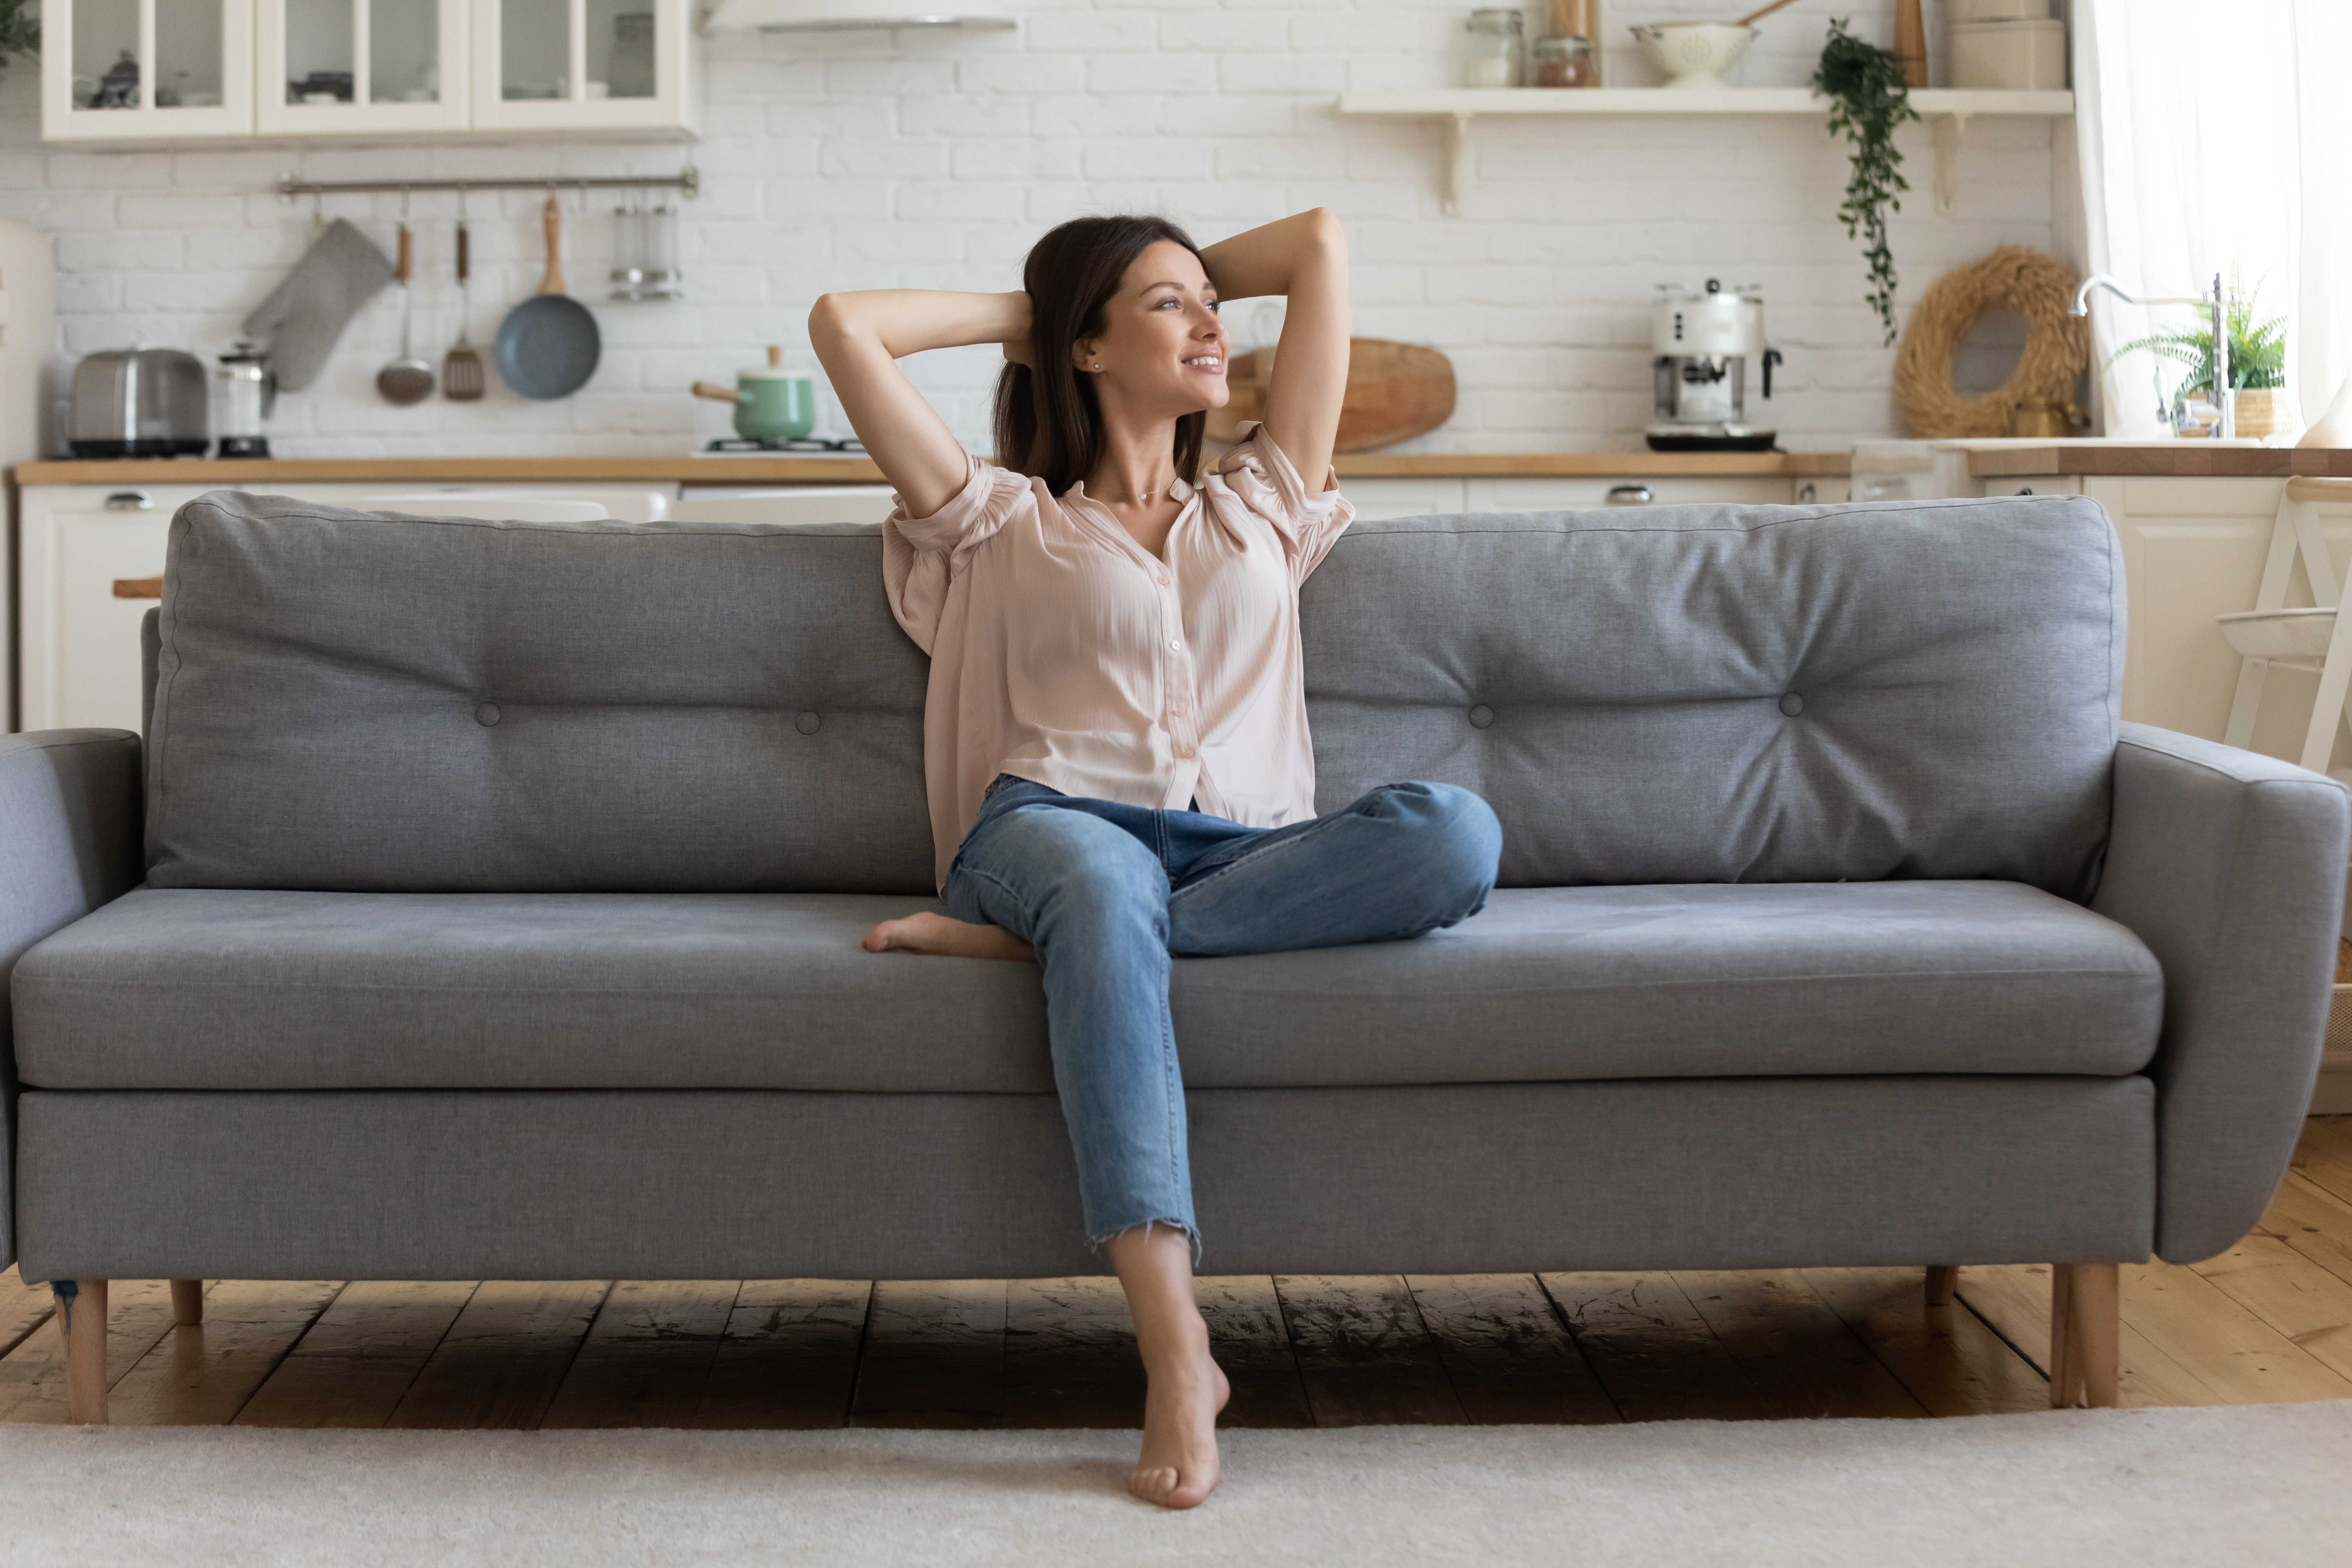 Femme heureuse sur un canapé | Source : Shutterstock